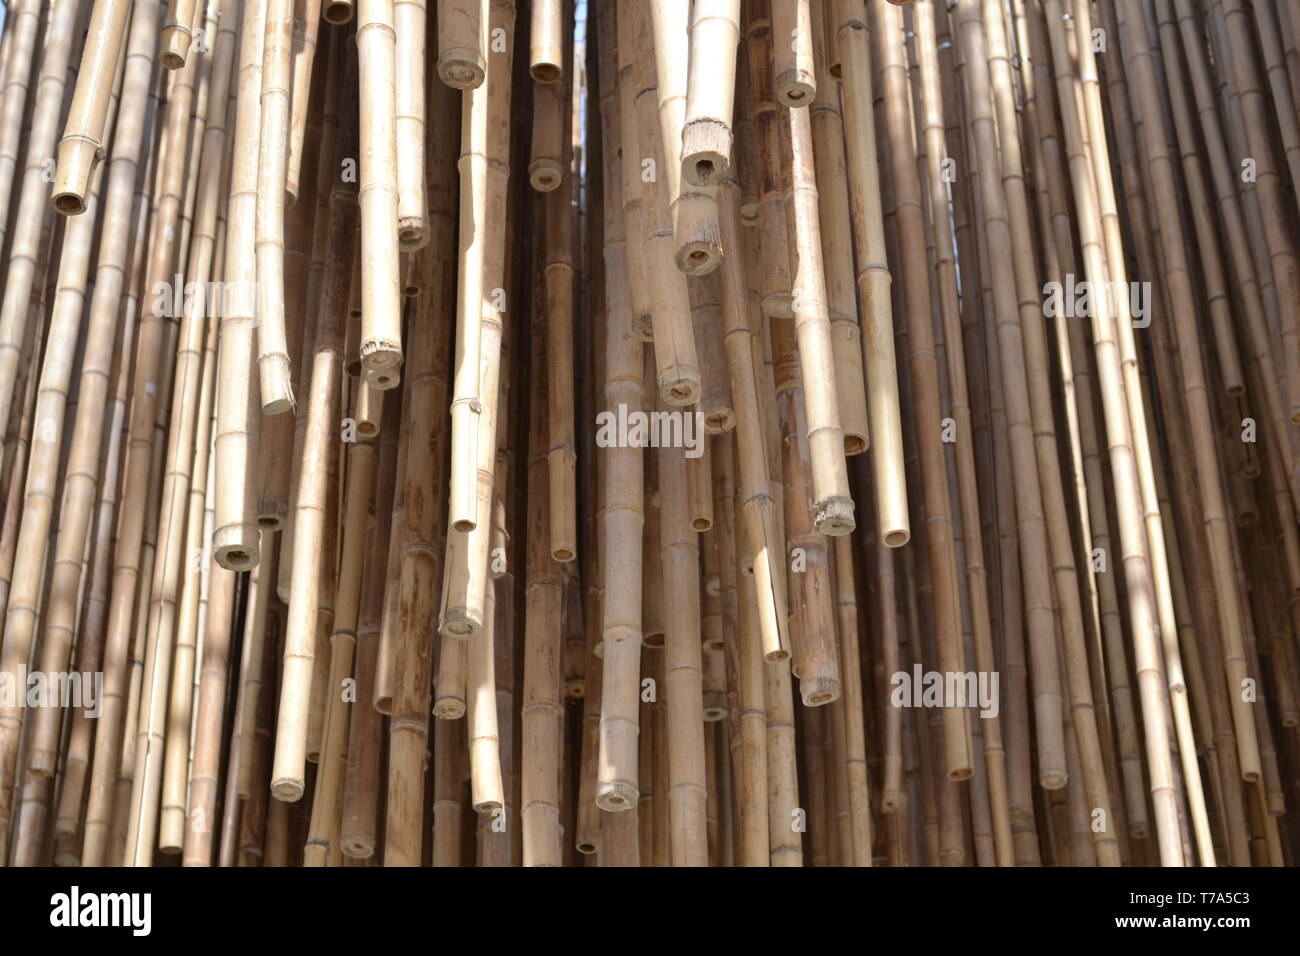 Close-up vue de grand groupe de cannes de bambou en attente installé pour l'isolation contre l'espace chauffage par les rayons du soleil dans la zone d'exposition. Banque D'Images